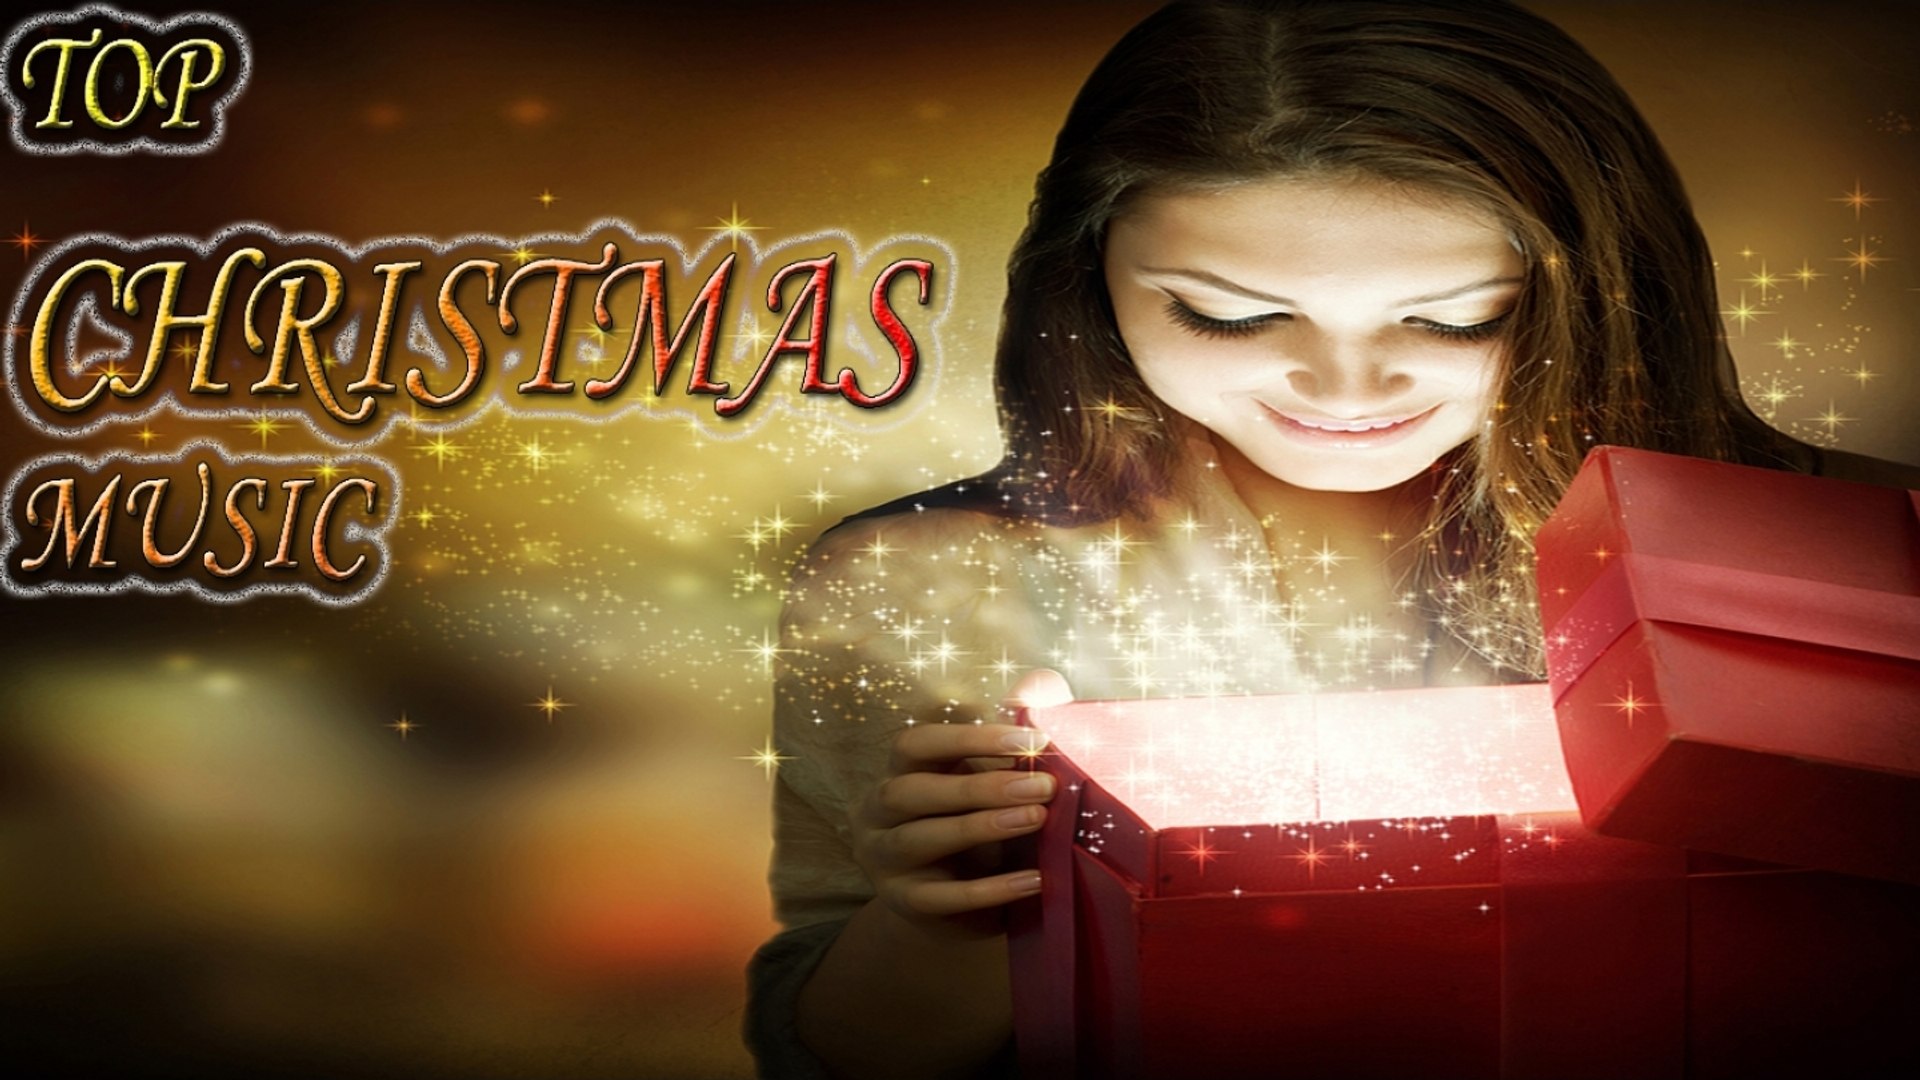 JL - TOP CHRISTMAS MUSIC - Traditional Christmas songs